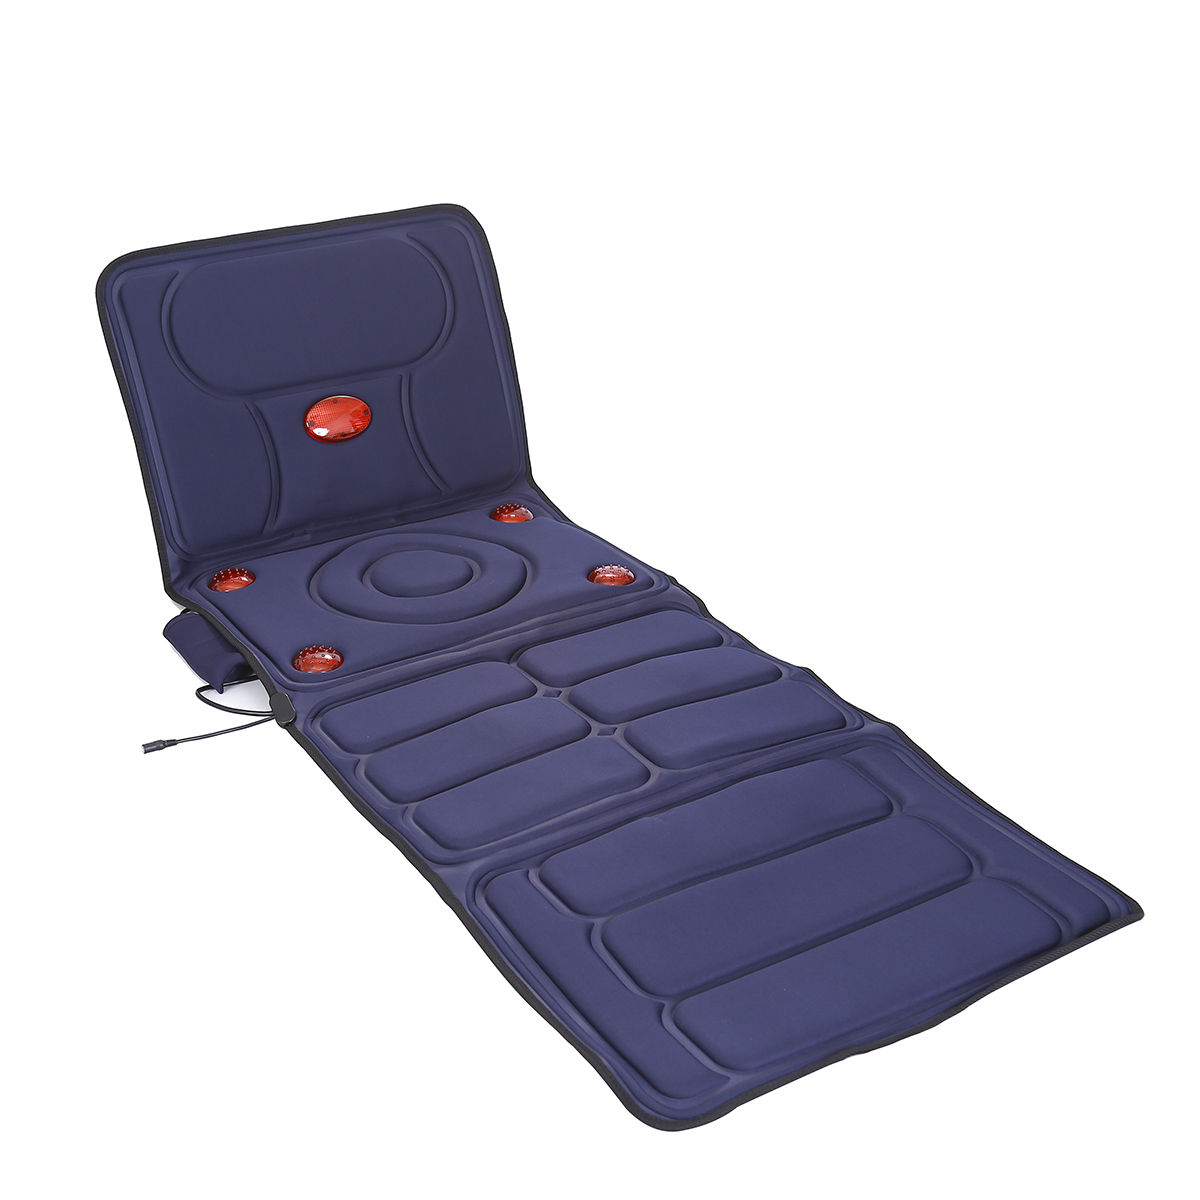 Vibration massage mattress